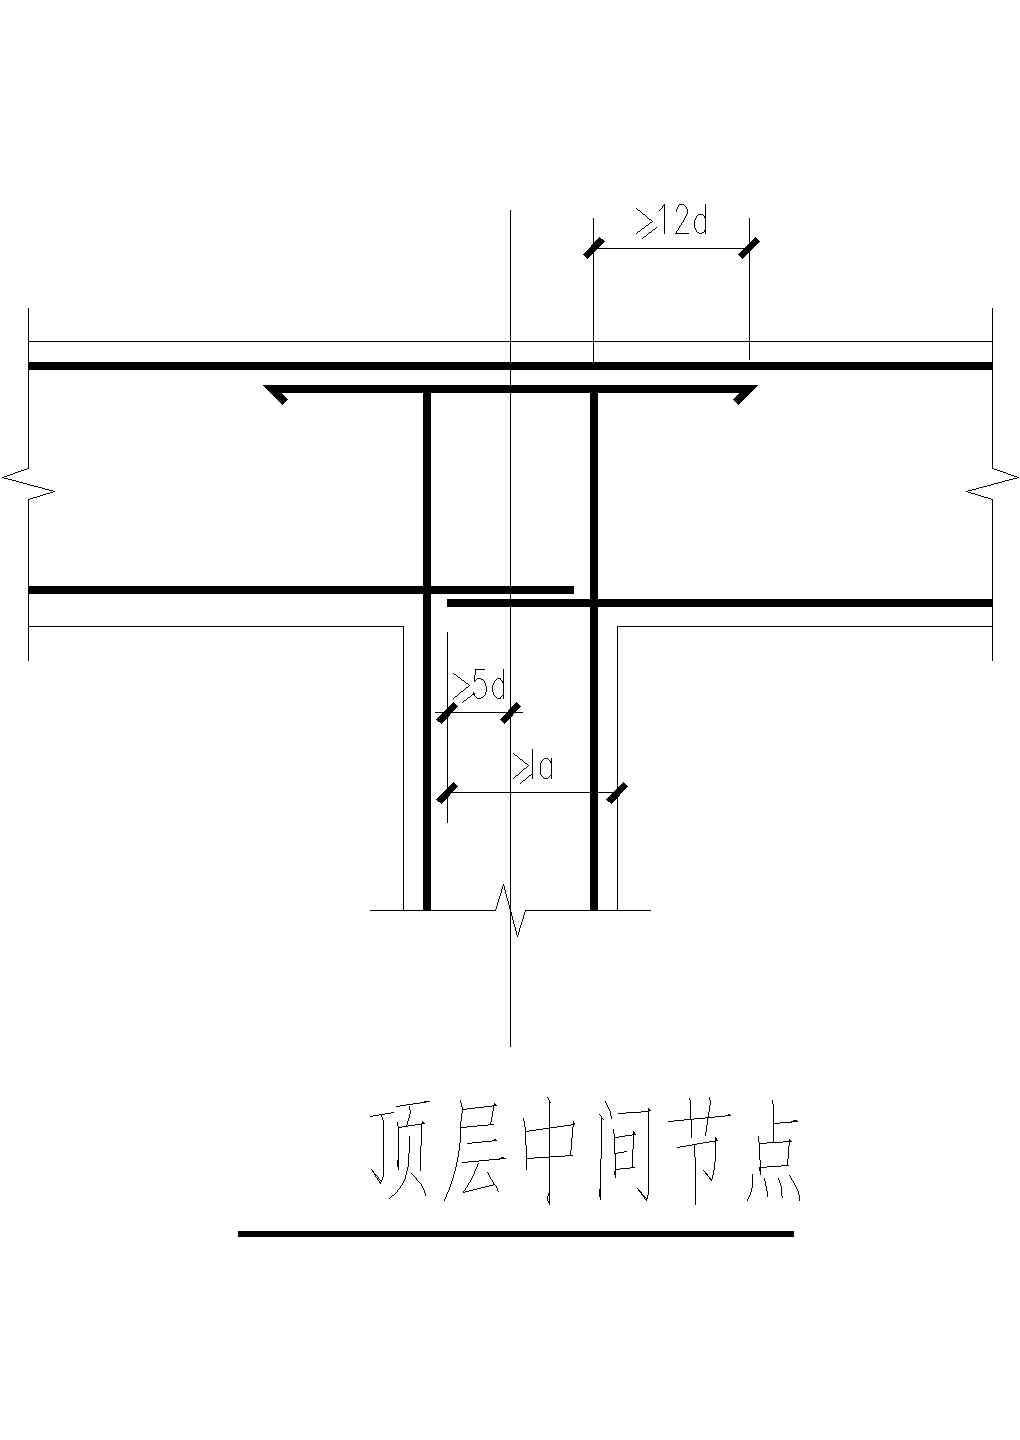 某建筑顶层中间节点设计详图